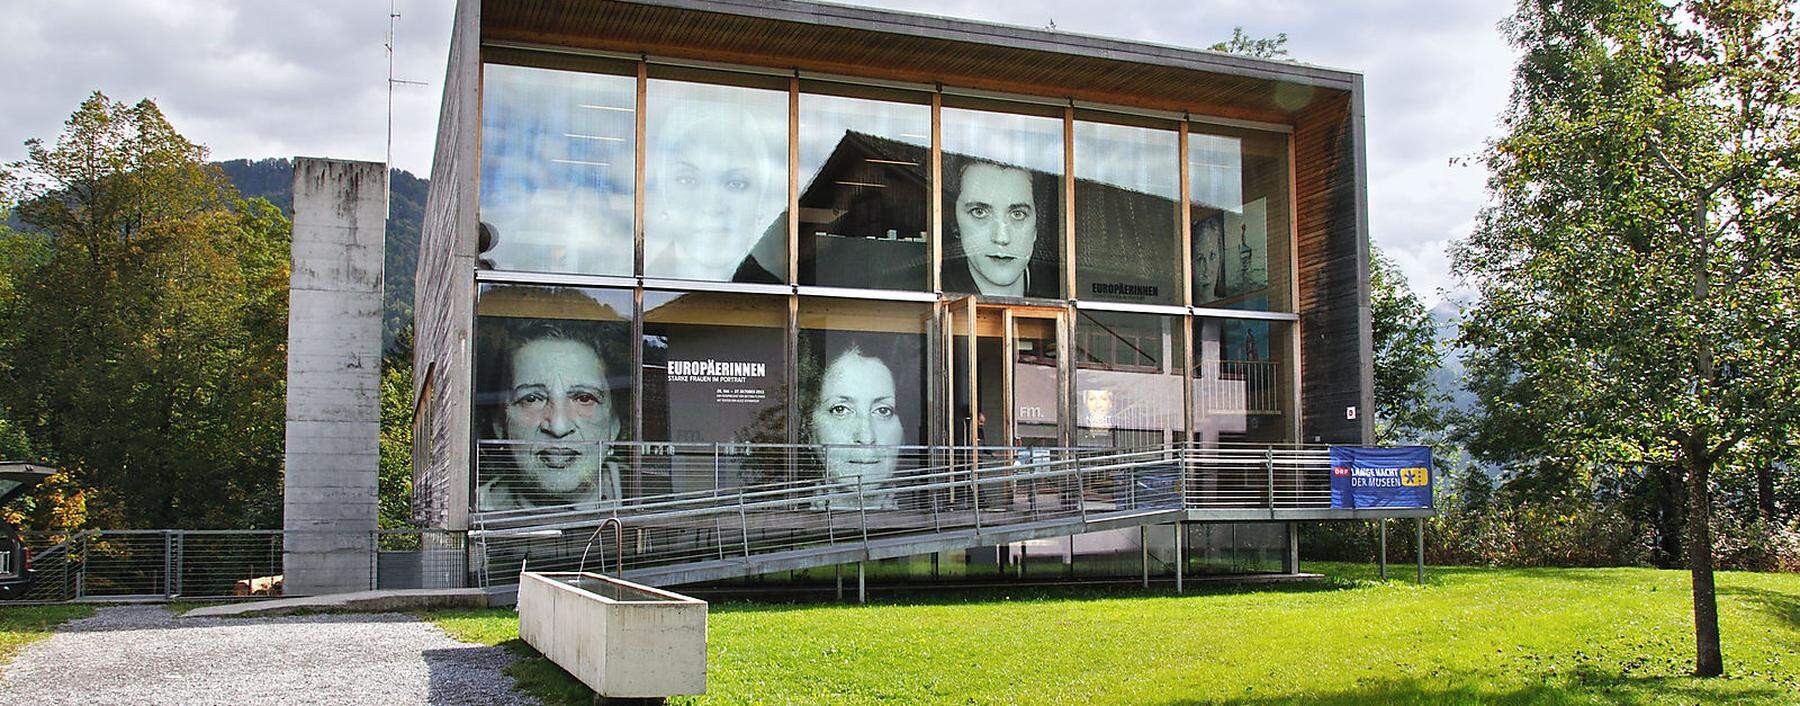 Das weltweit erste Frauenmuseum steht in Hittisau im Bregenzerwald.